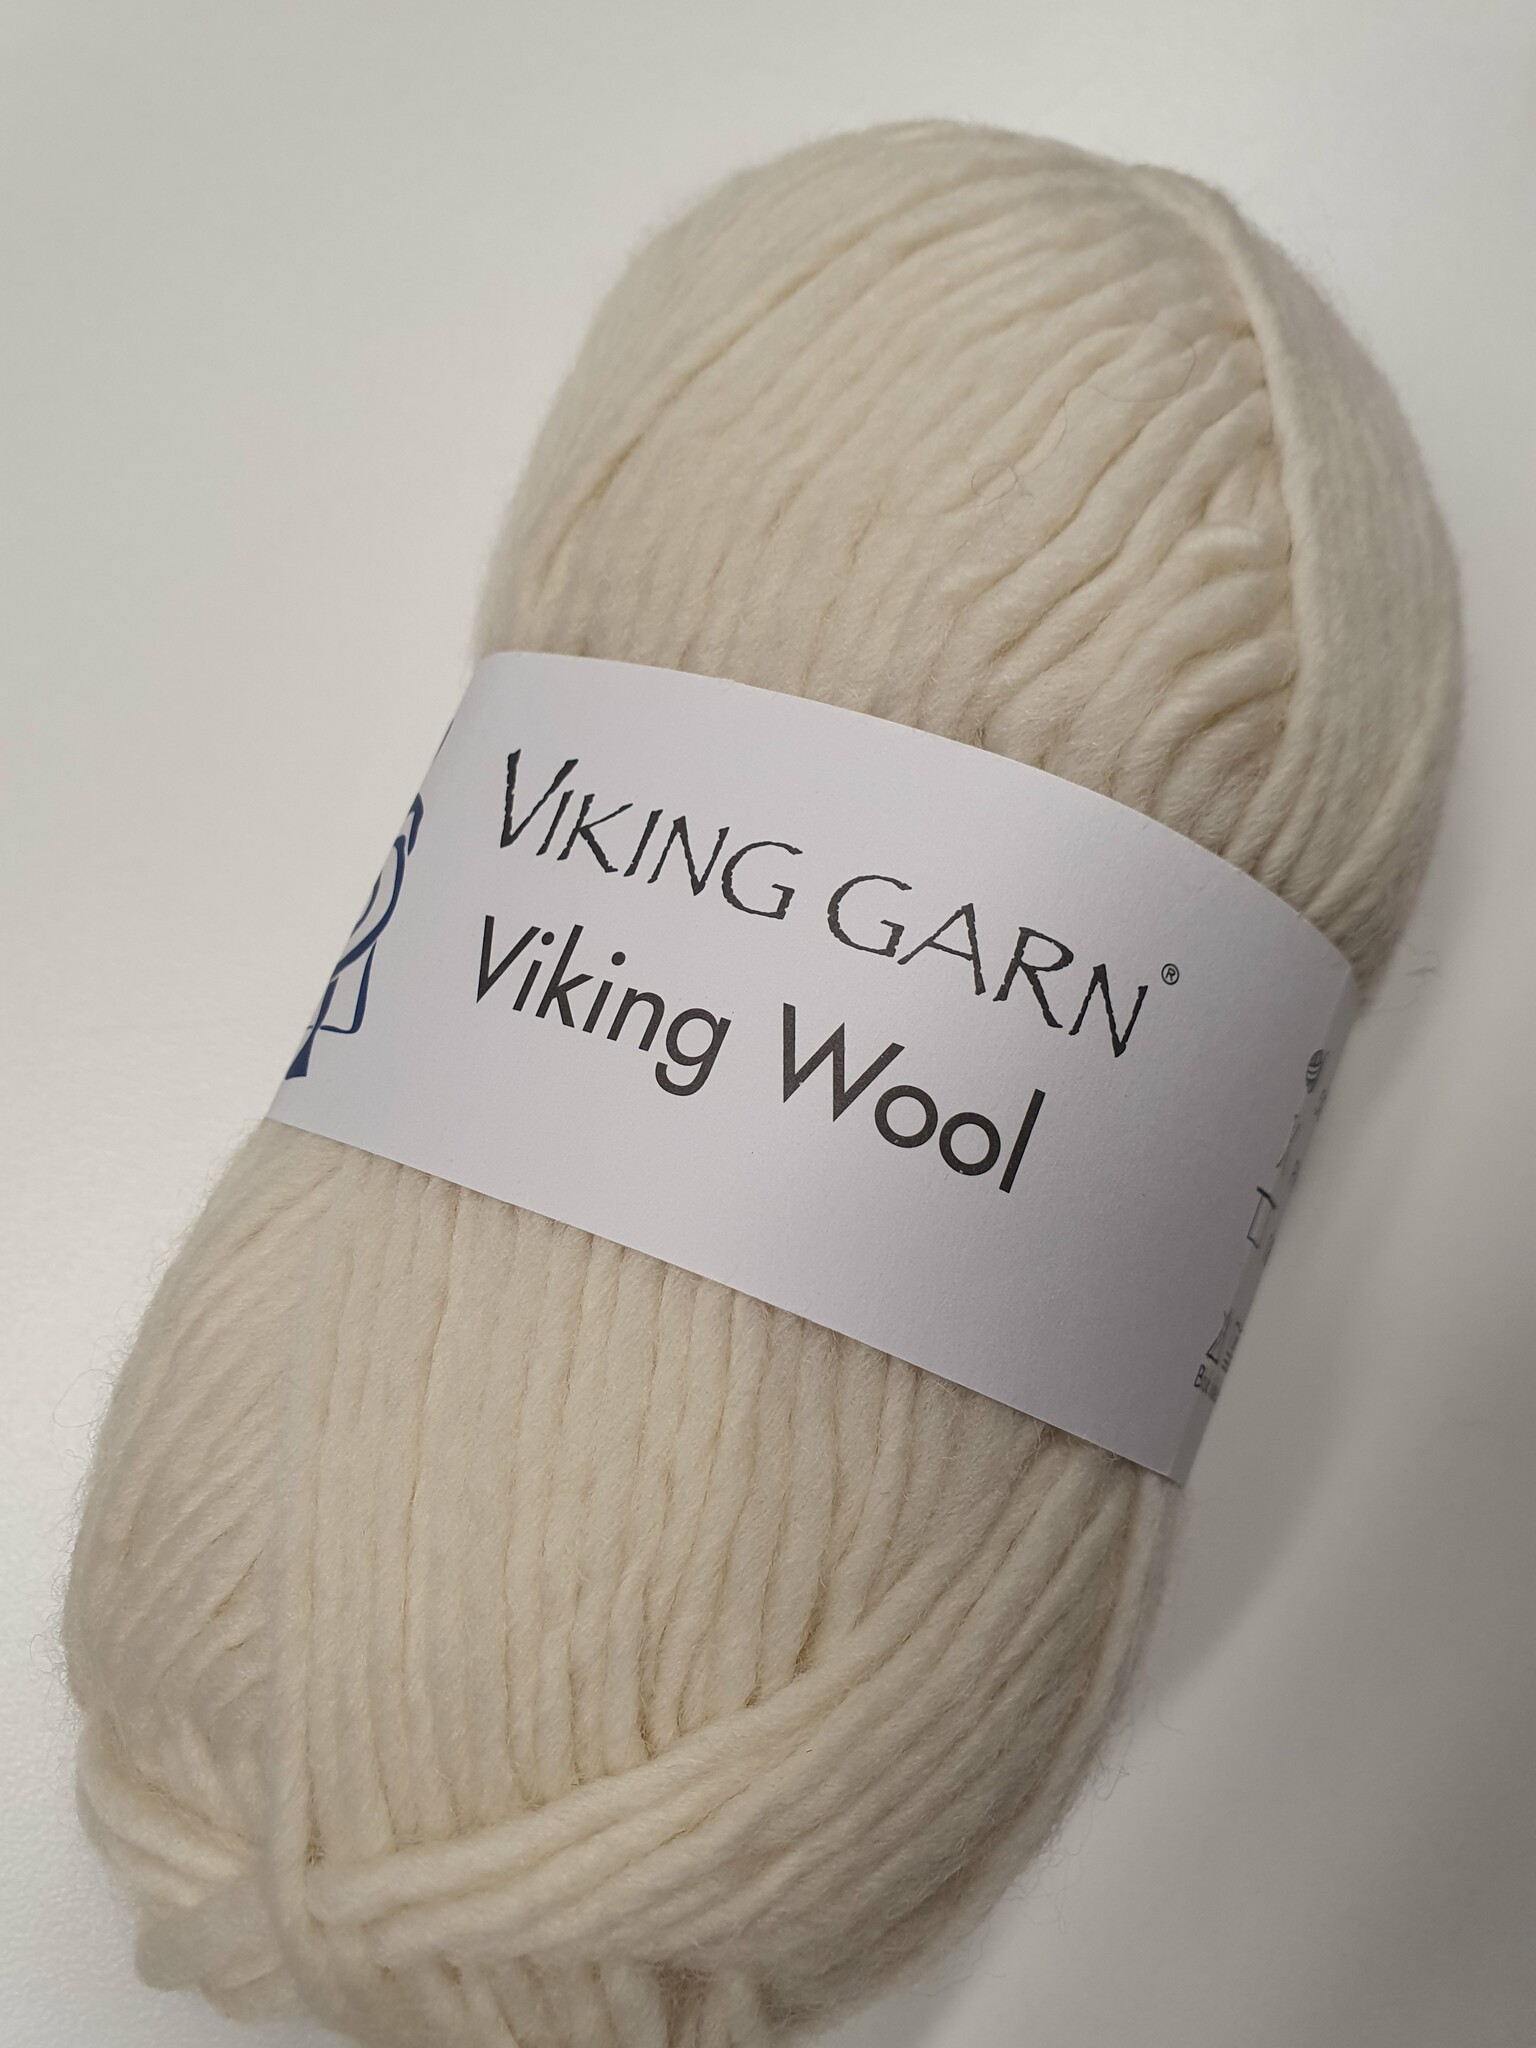 Viking Wool